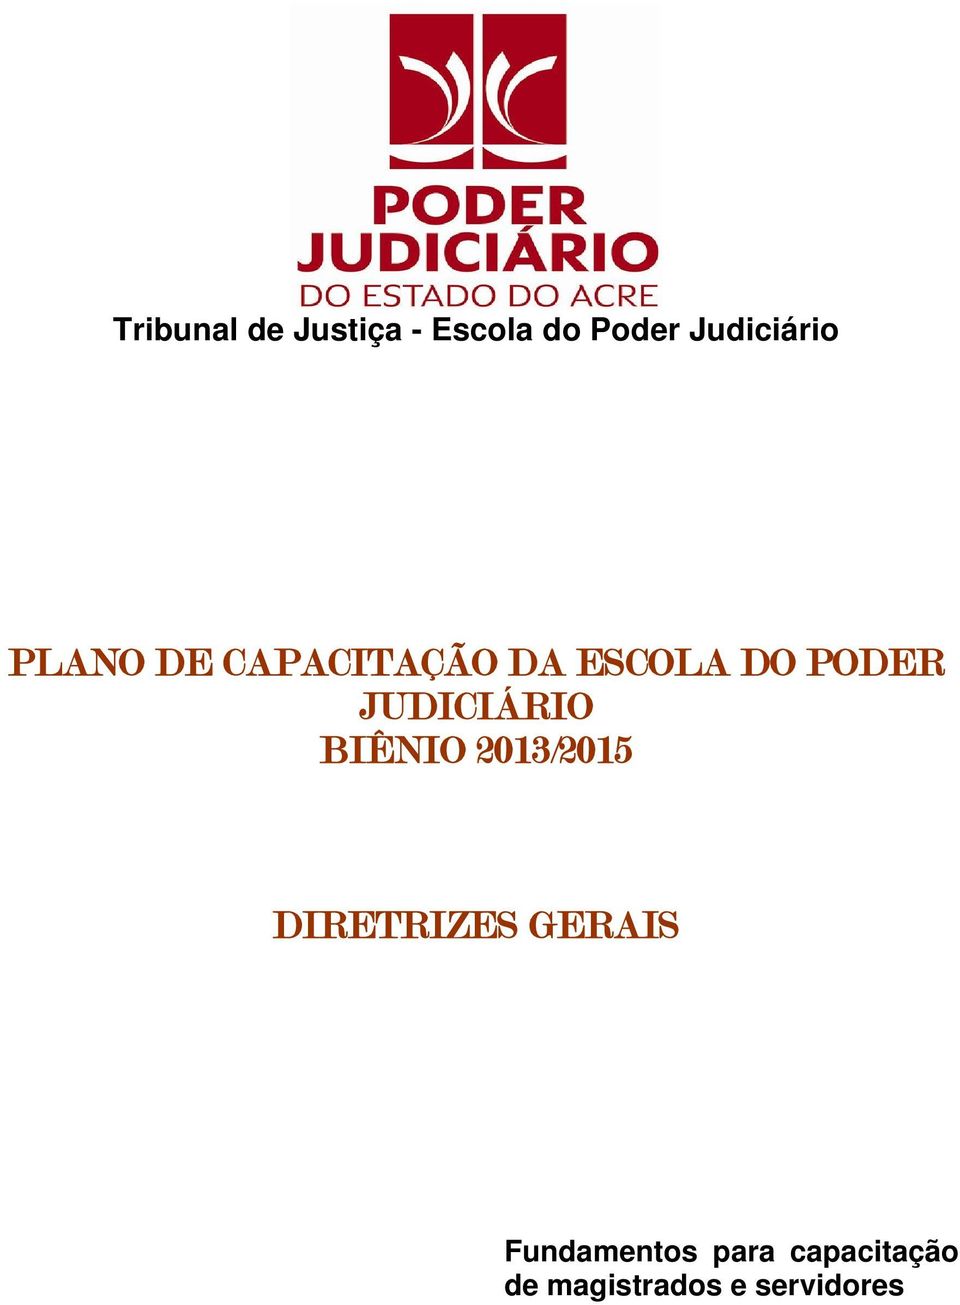 PODER JUDICIÁRIO BIÊNIO 2013/2015 DIRETRIZES